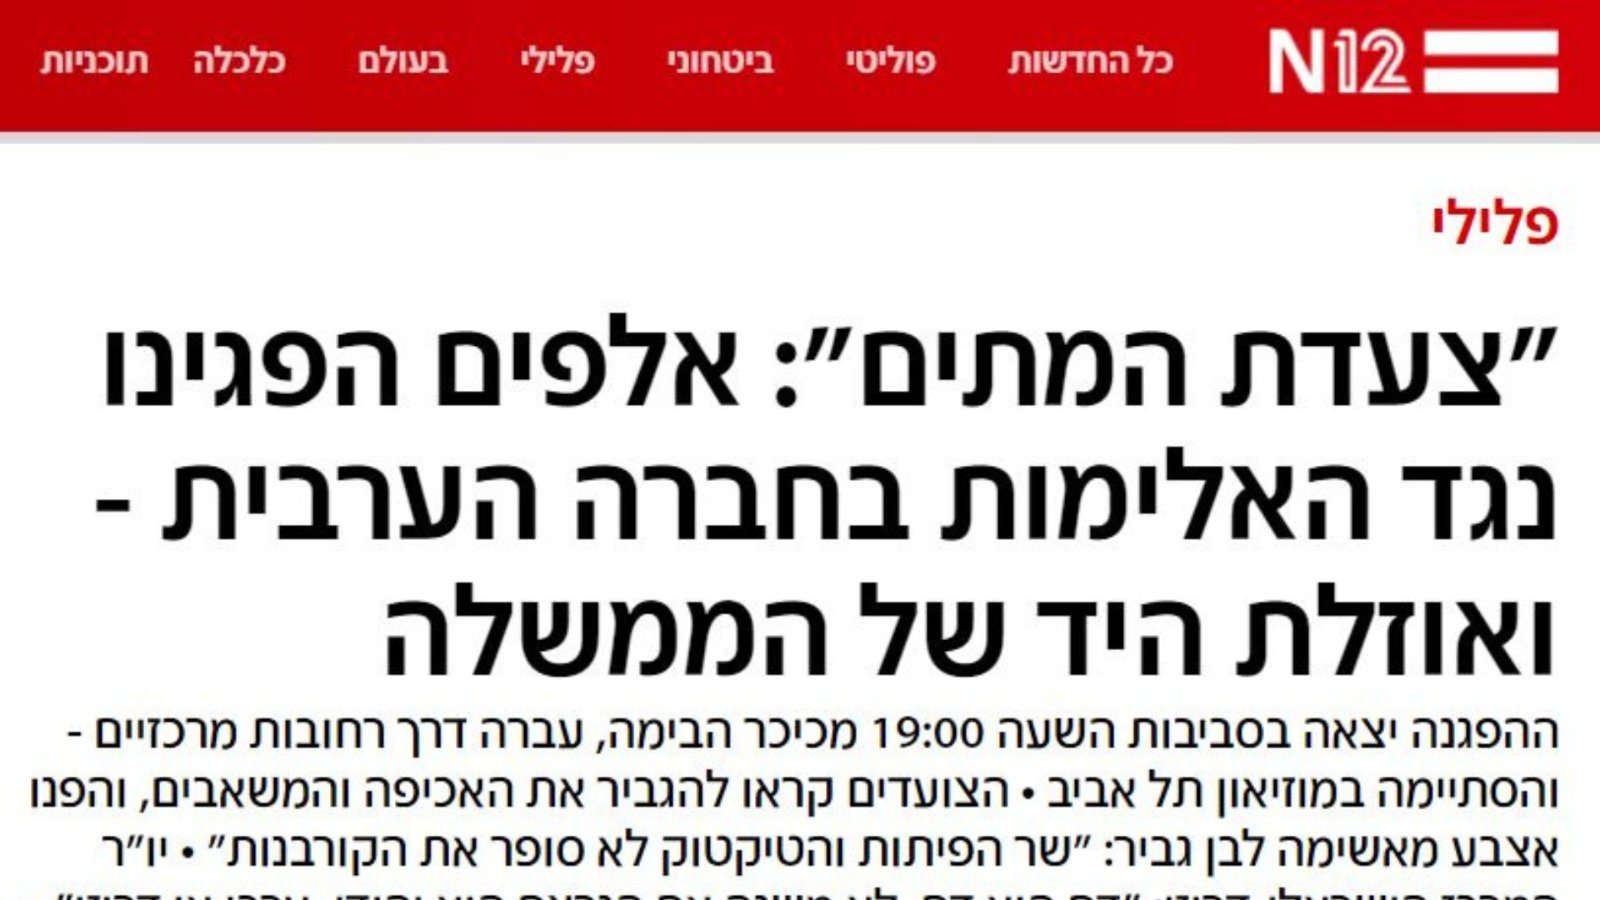 اجنبية، عبرية وعربية: تغطية اعلامية موسعة لـ "مسيرة الأموات"-5